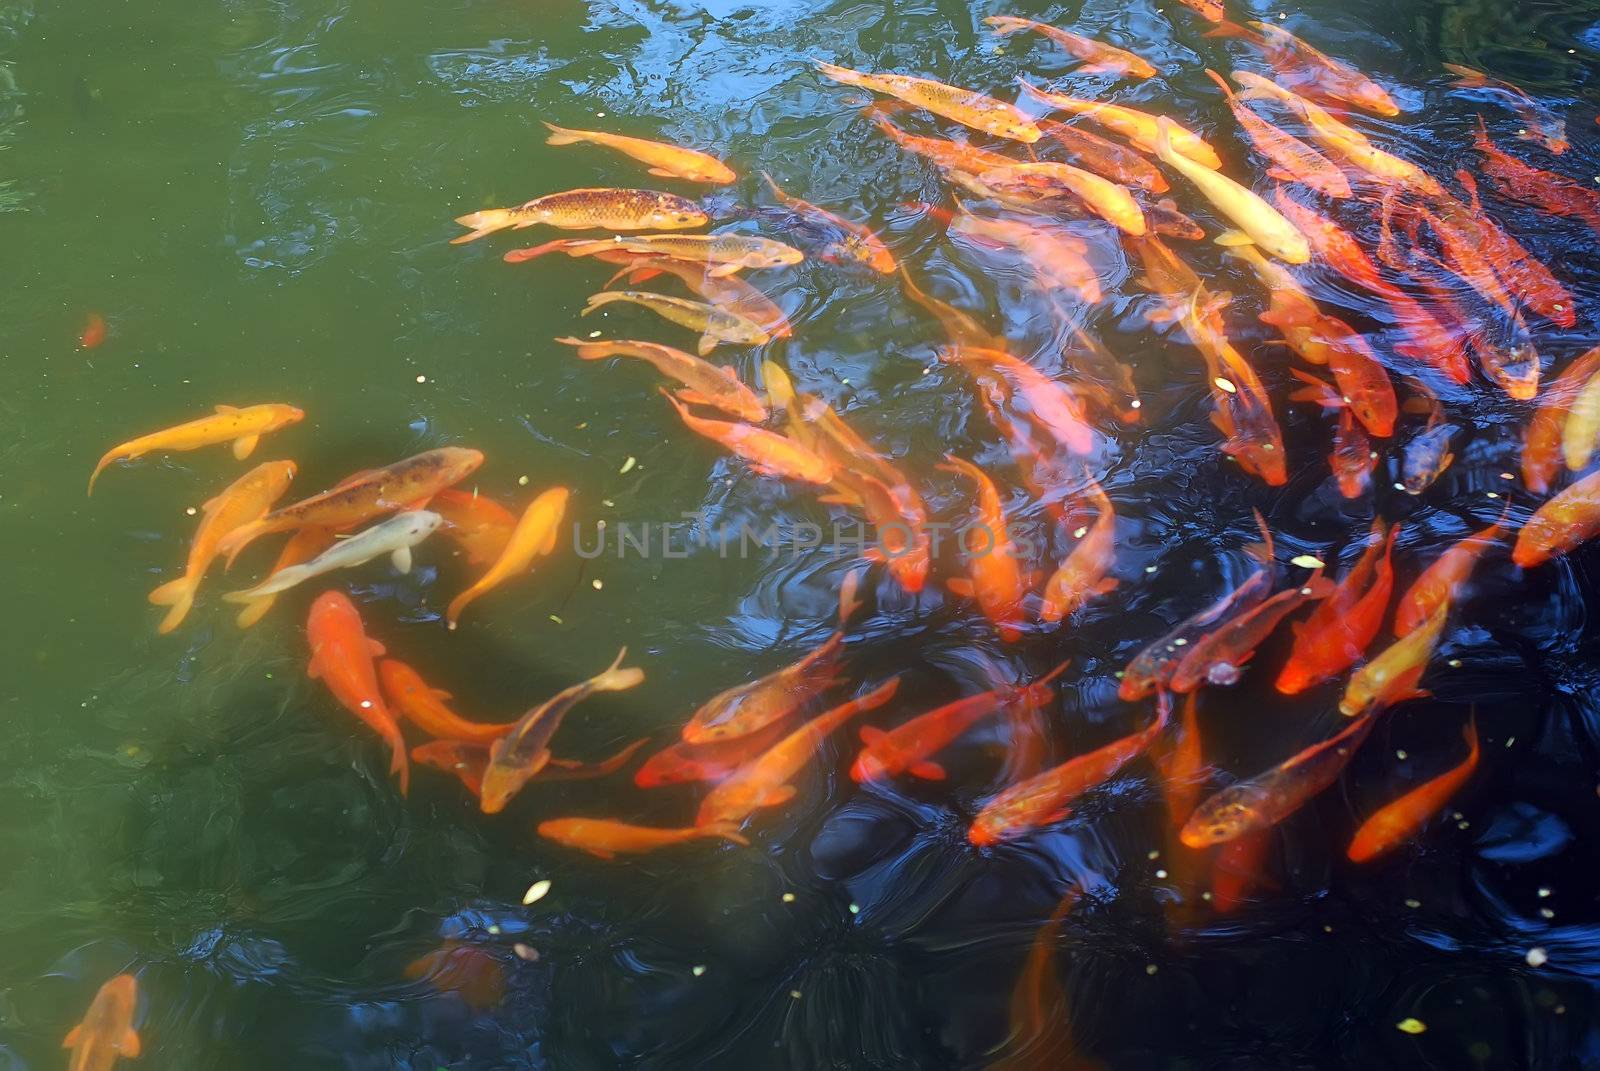 Goldfish group  Taken in Wenzhou City, China; November 2010 shooting